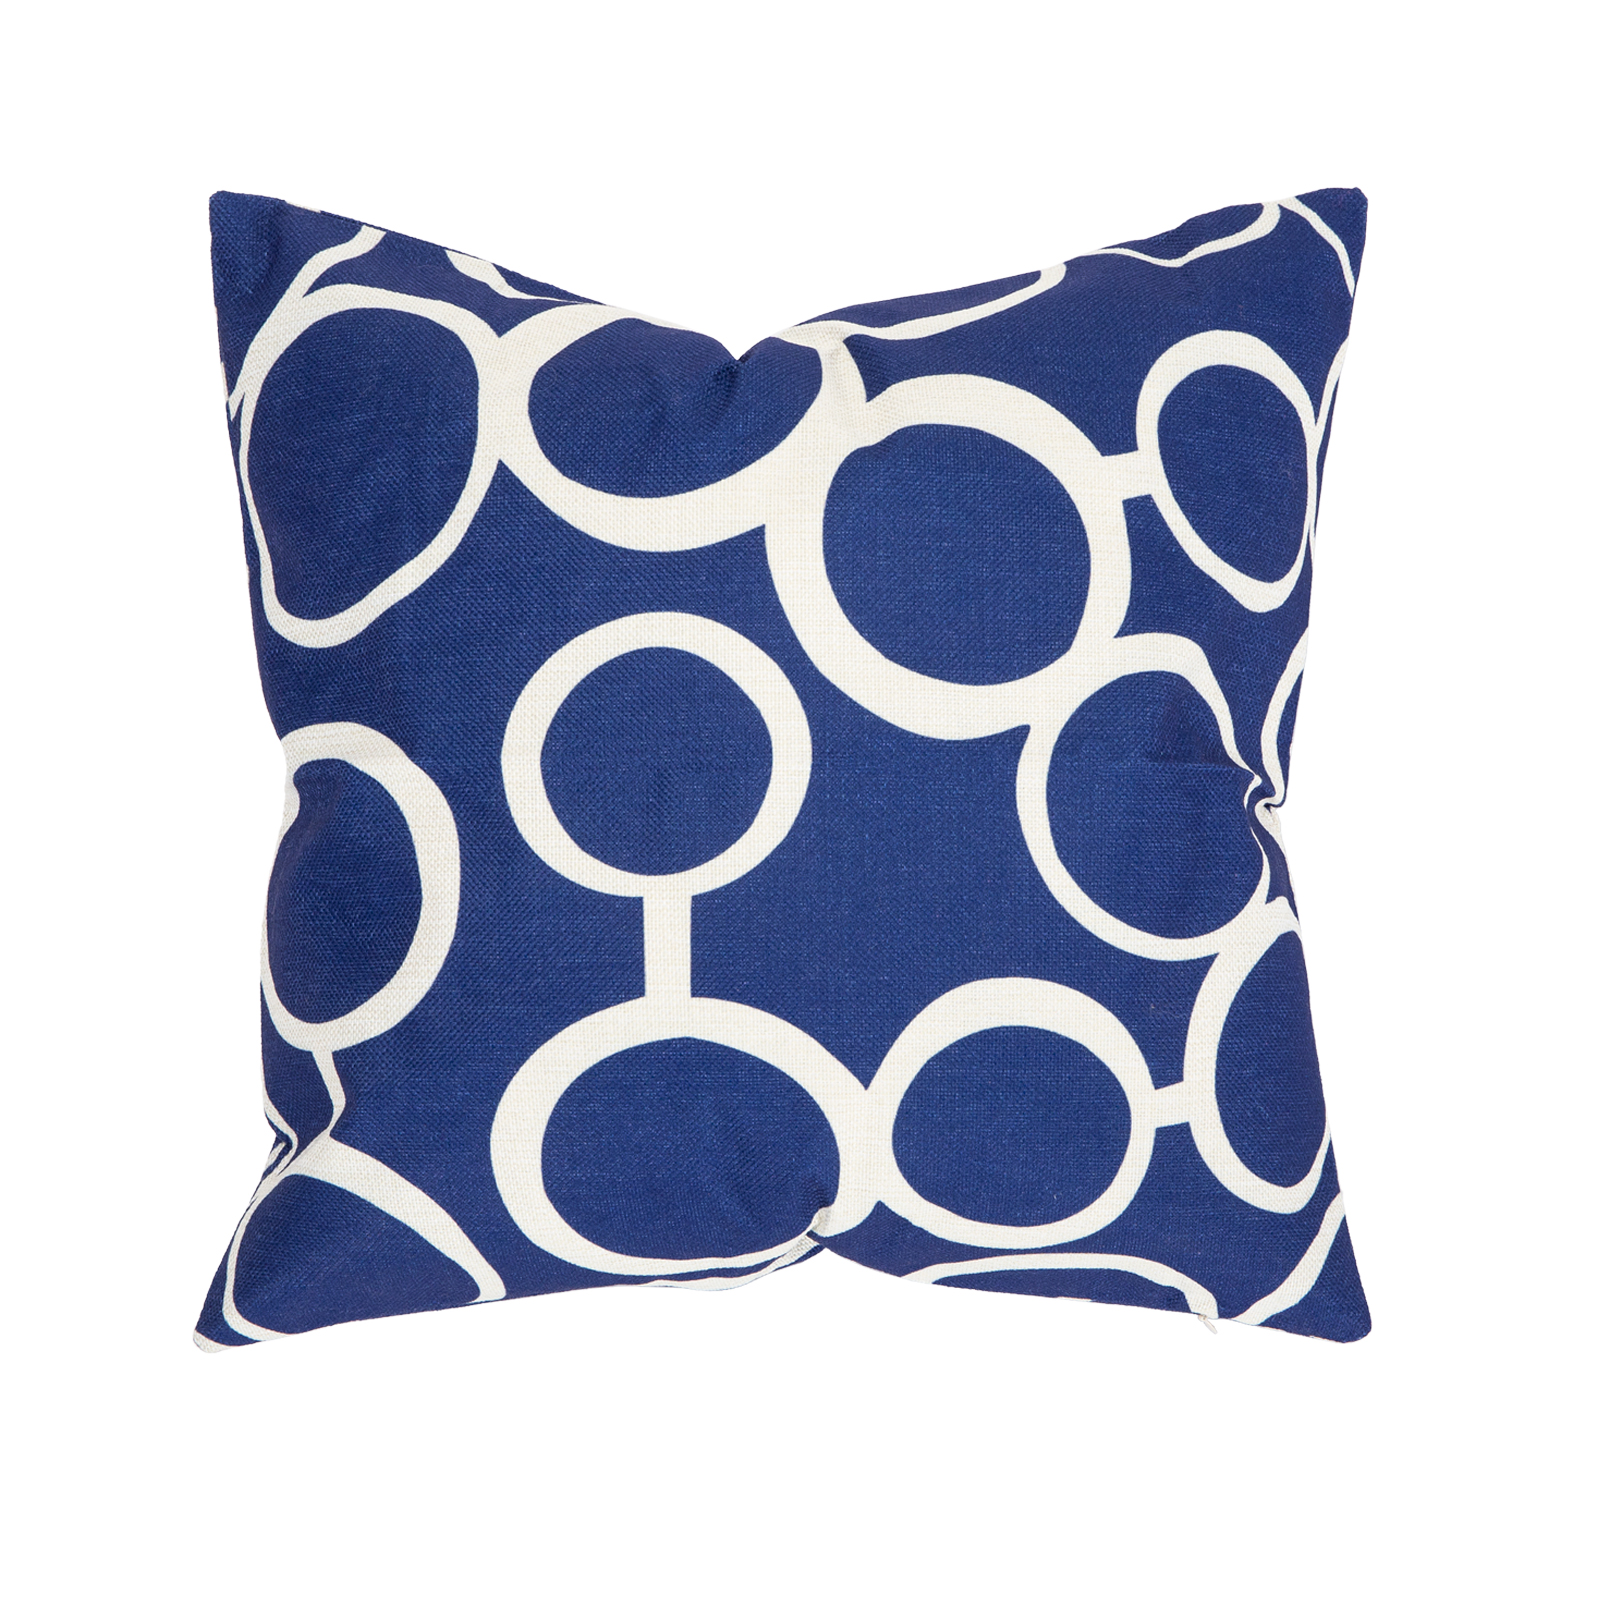 Blue Pillow (Retro) | Event Trade Show Pillow Rental | FormDecor